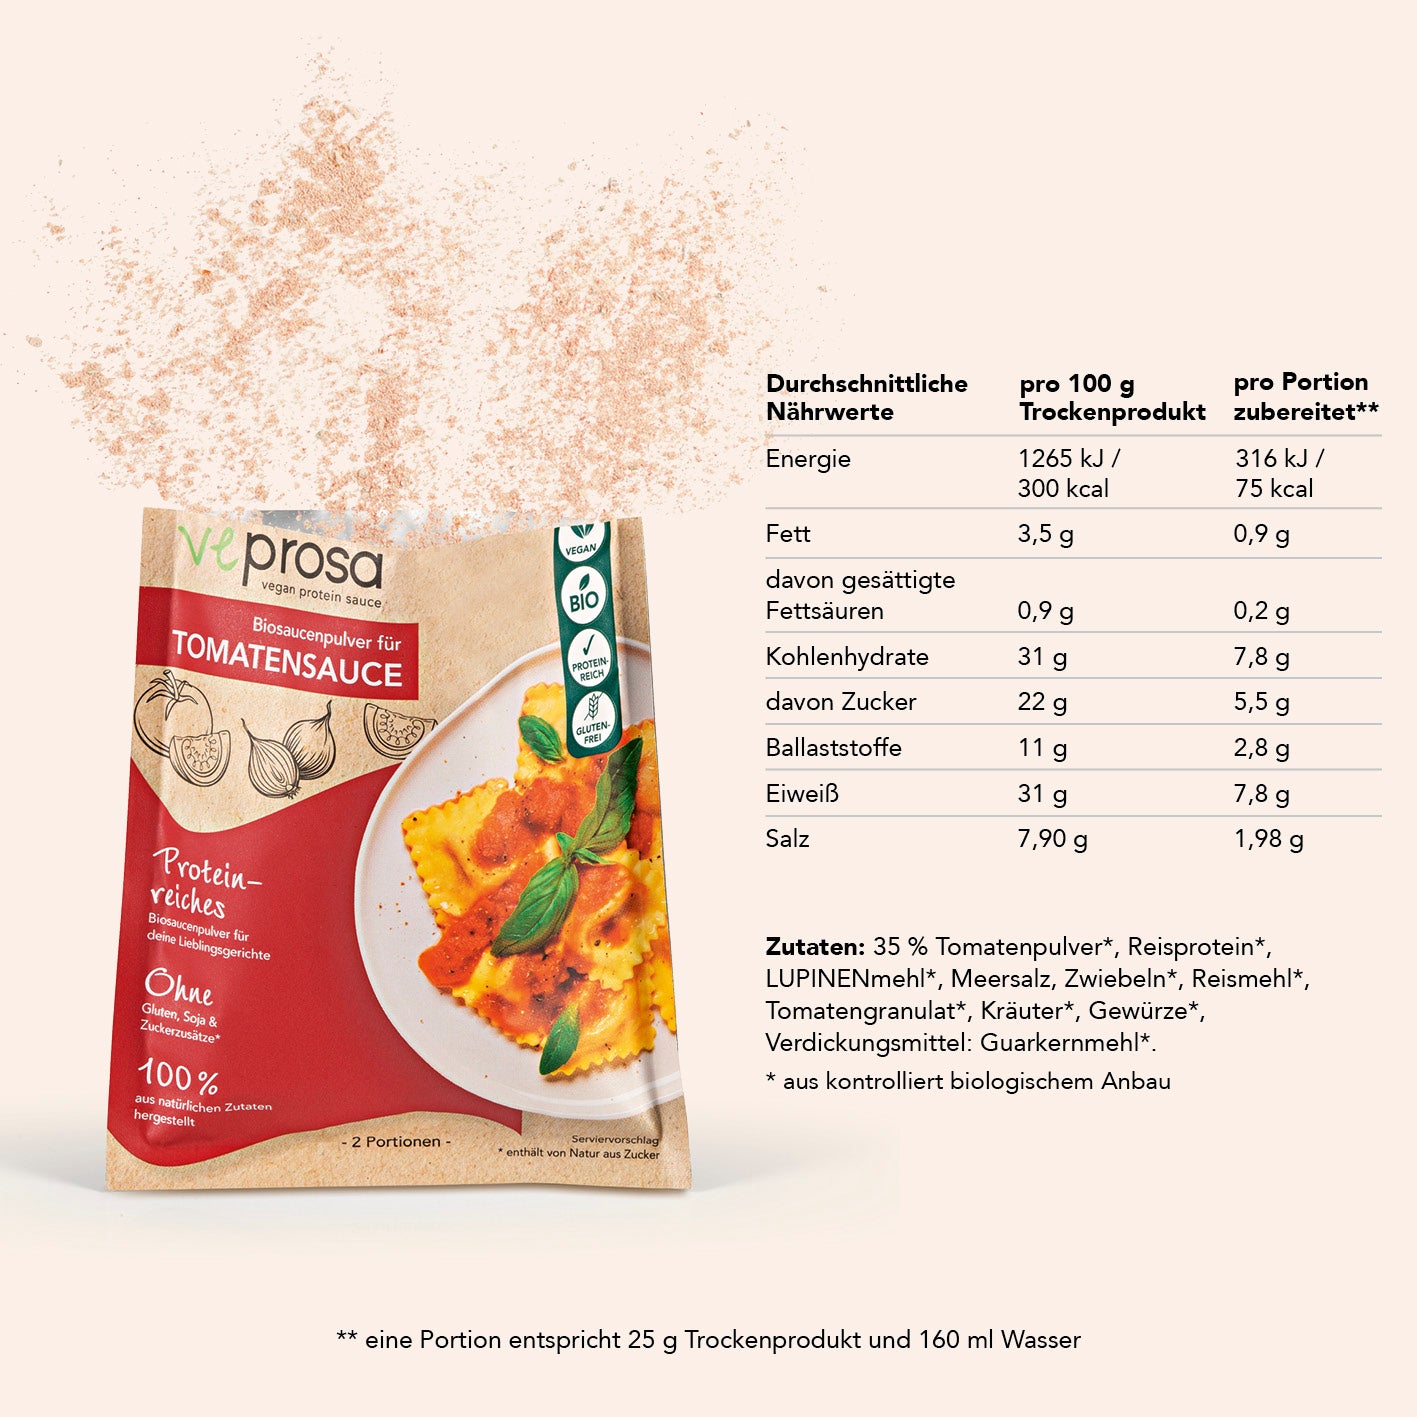 vegan protein sauce Biosaucenpulver für Tomatensauce (50 g)